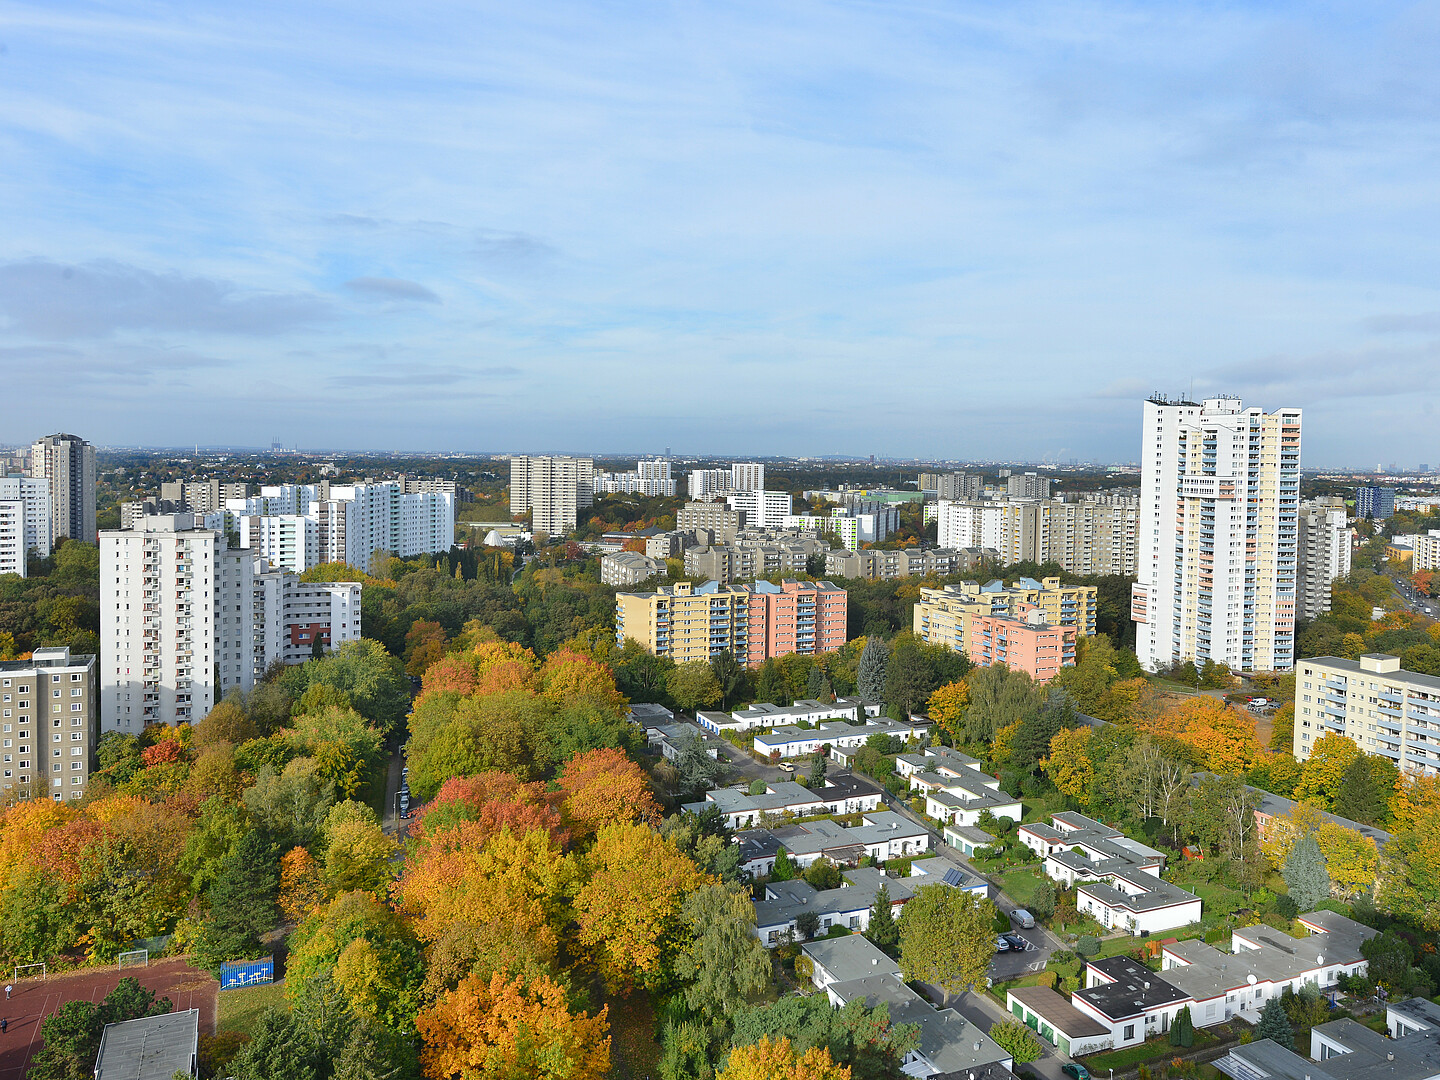 Eine Panoramaaufnahme von Gropiusstadt. Im Vordergrund sind kleinere Häuser zu sehen, umringt von Hochhäusern.